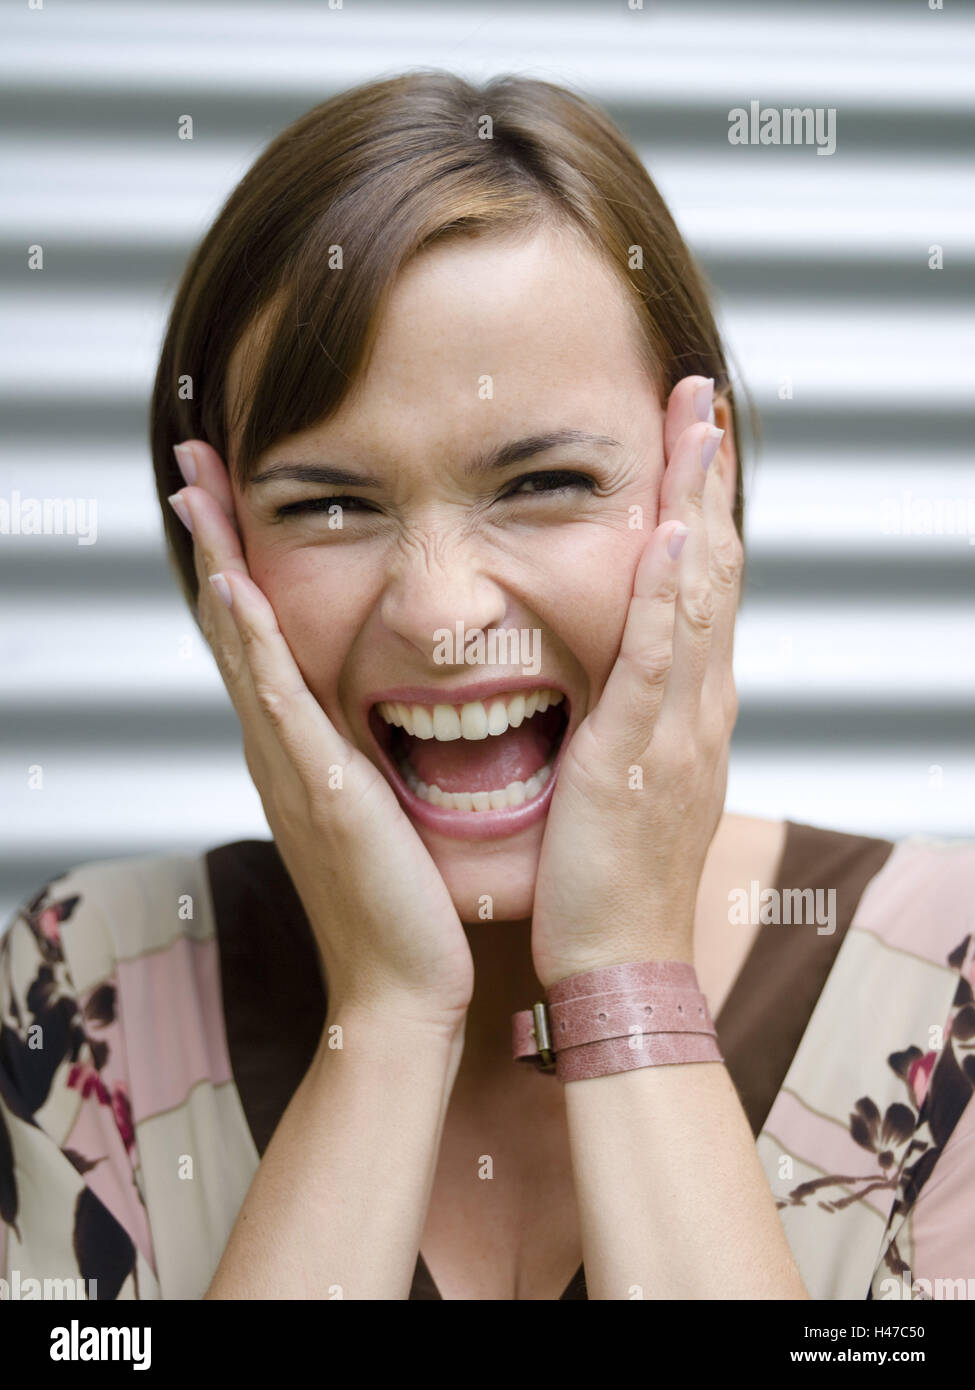 Woman, young, brunette, portrait, hands, look, laugh Stock Photo